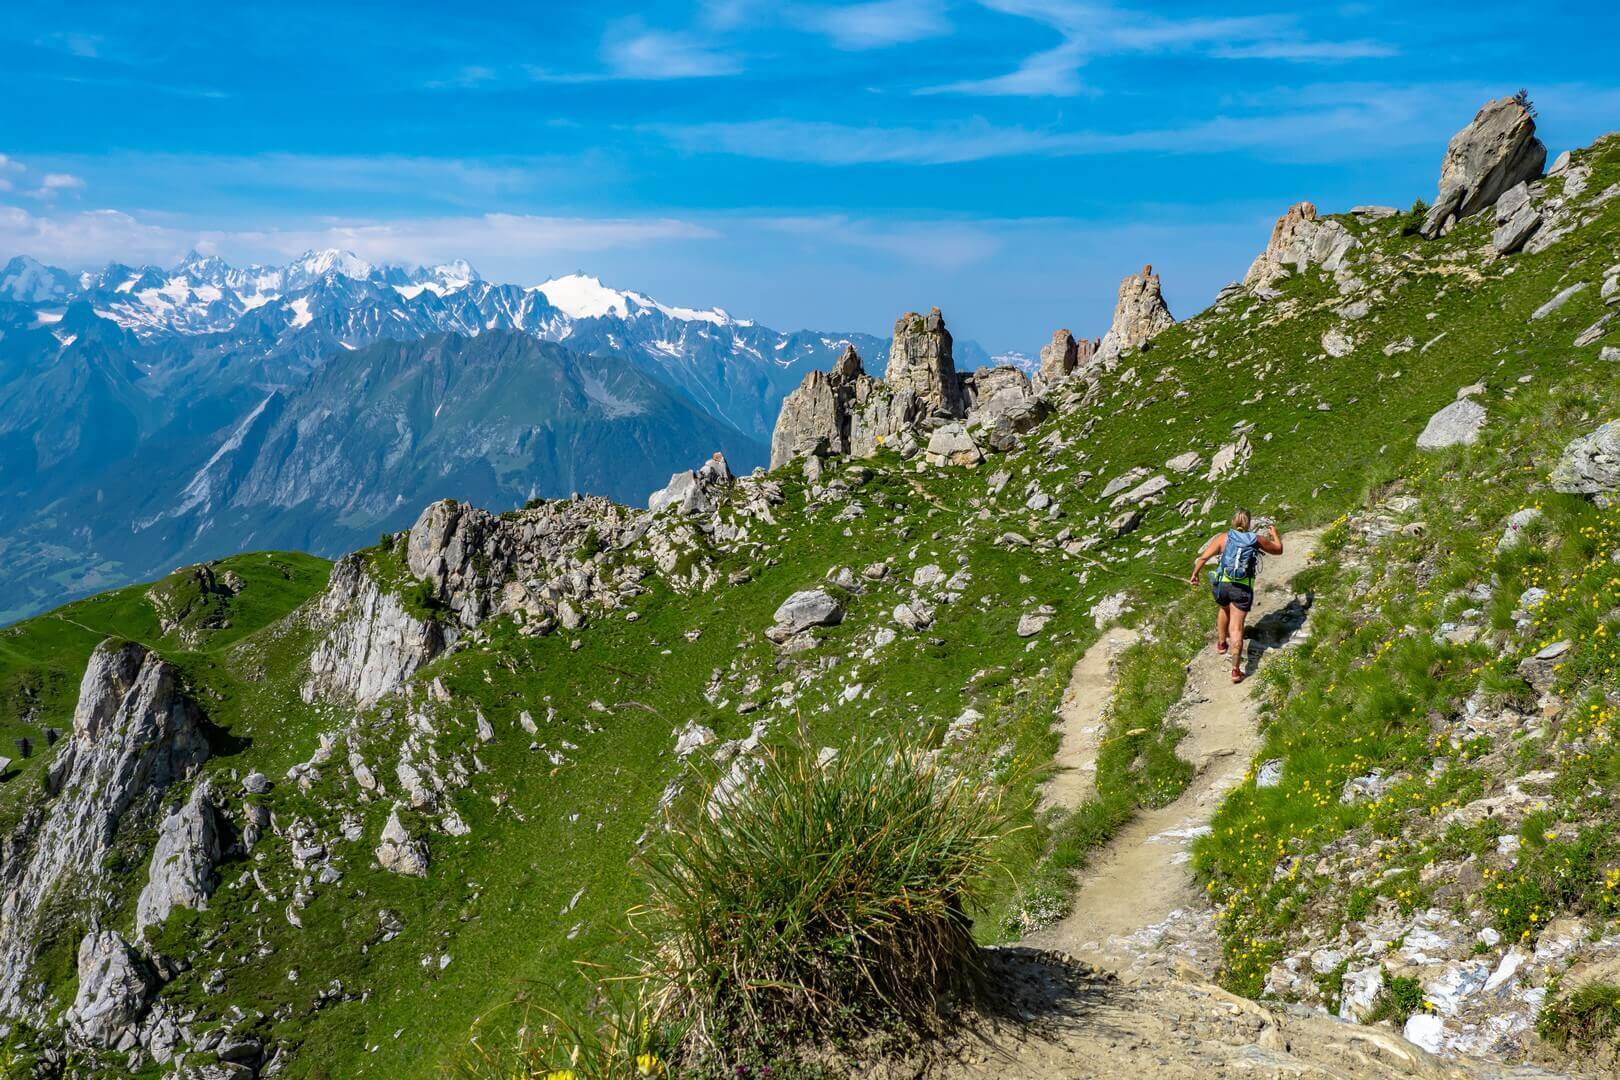 Les randonneurs faisant de la randonnée pendant l'été dans les montagnes si les alpes suisses qui entourent Verbier, la plus grande destination de ski de Suisse